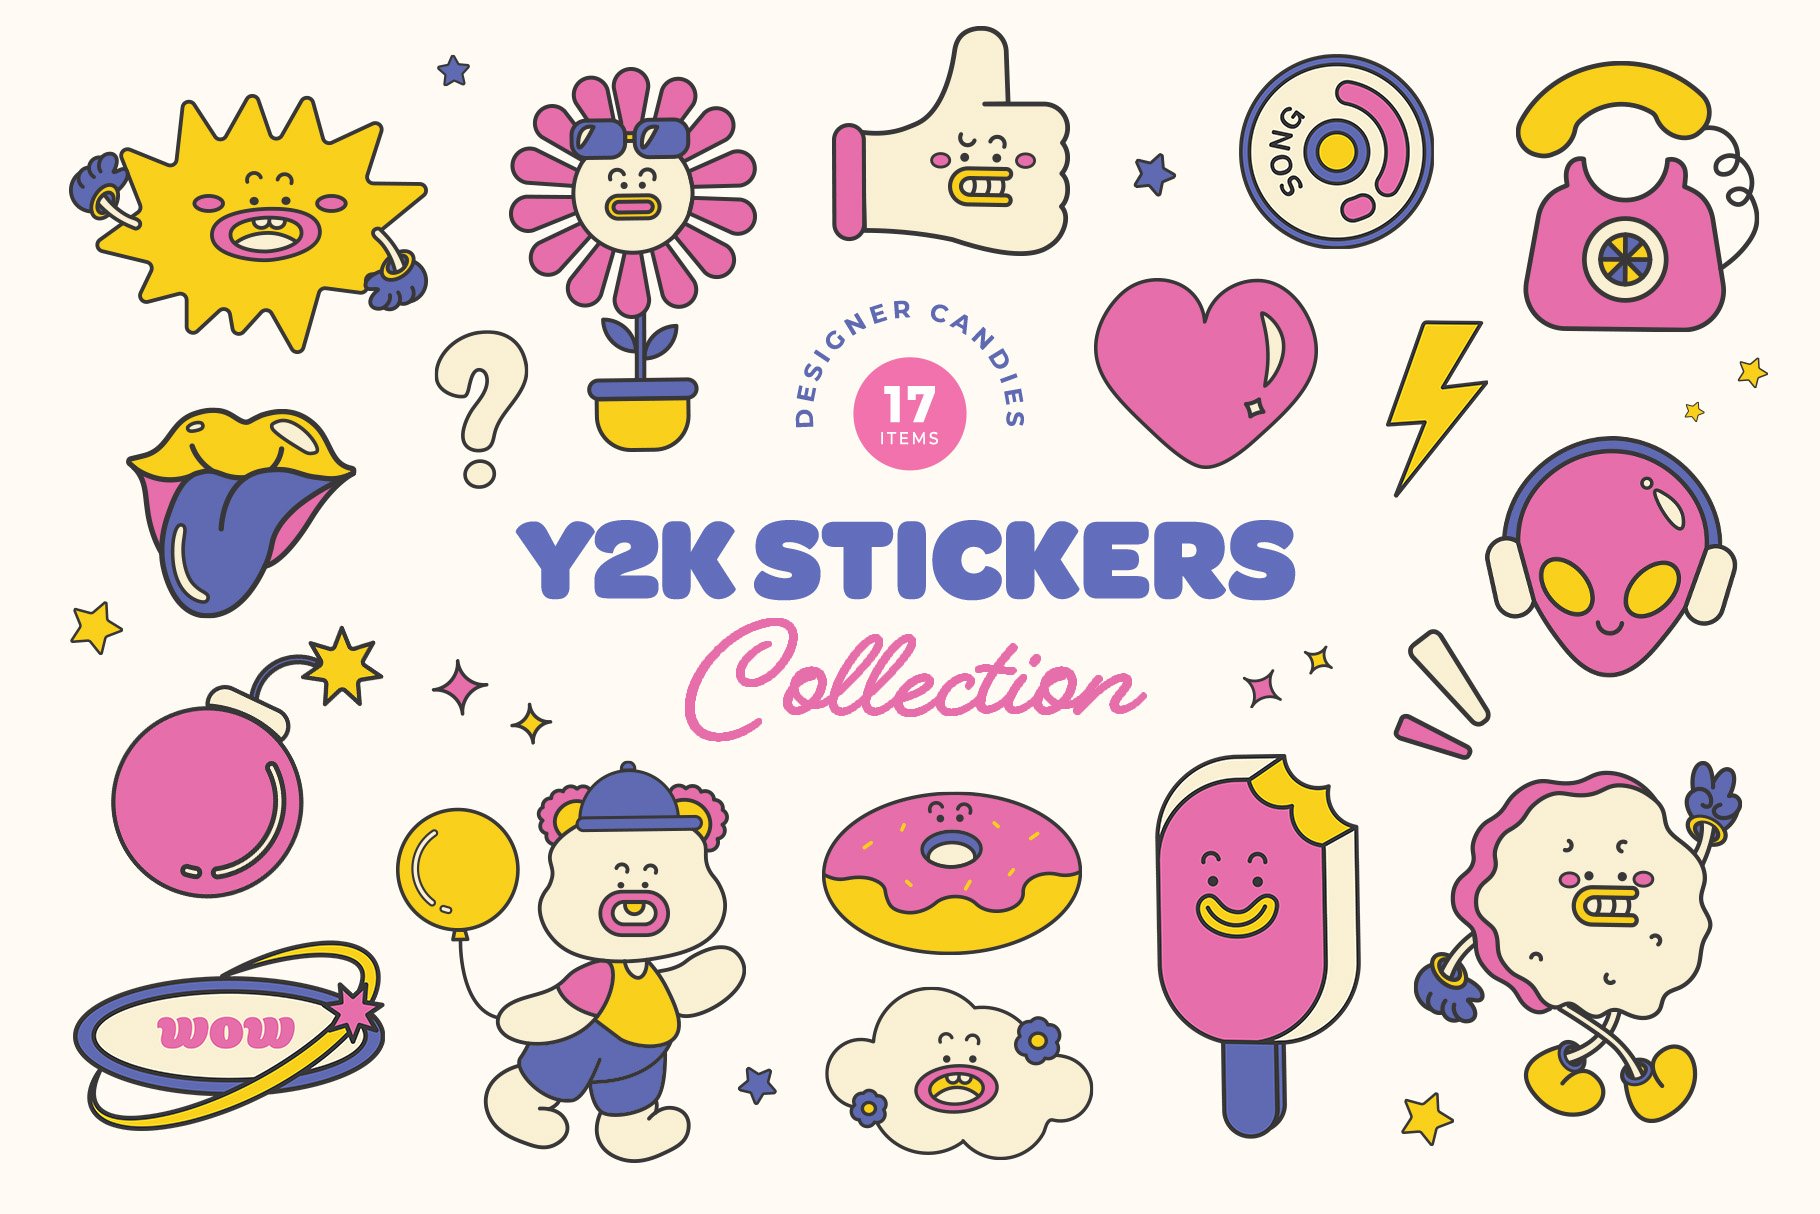 Chi tiết hơn 99+ sticker y2k dễ làm nhất - Co-Created English